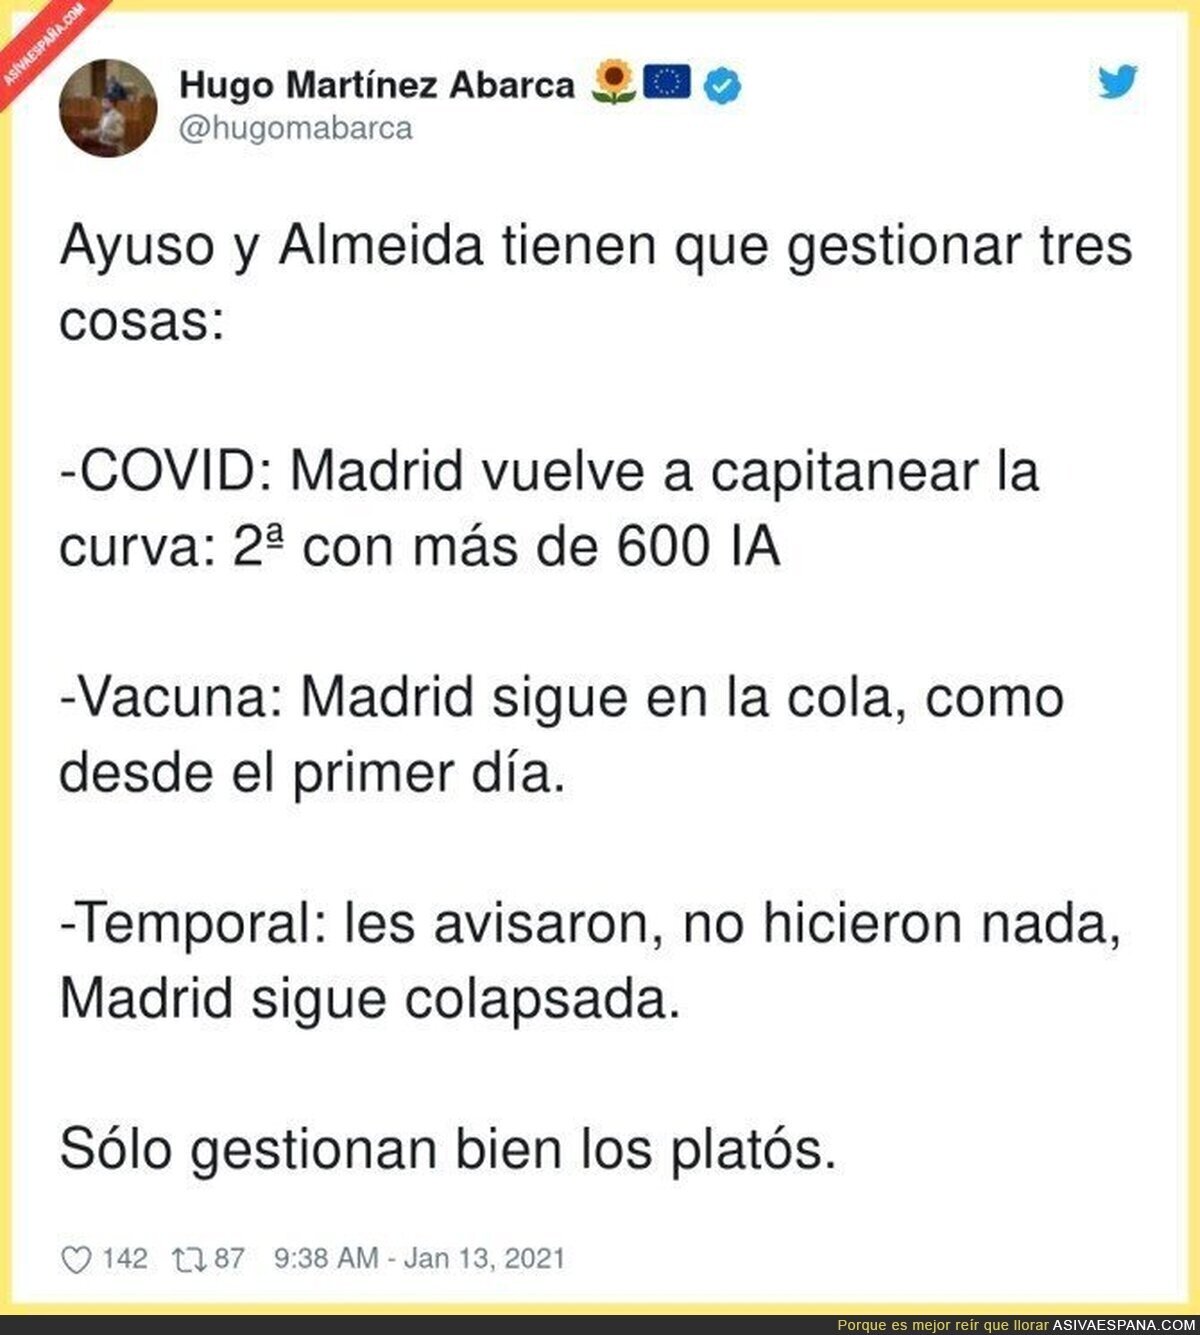 No hacen nada bien en Madrid